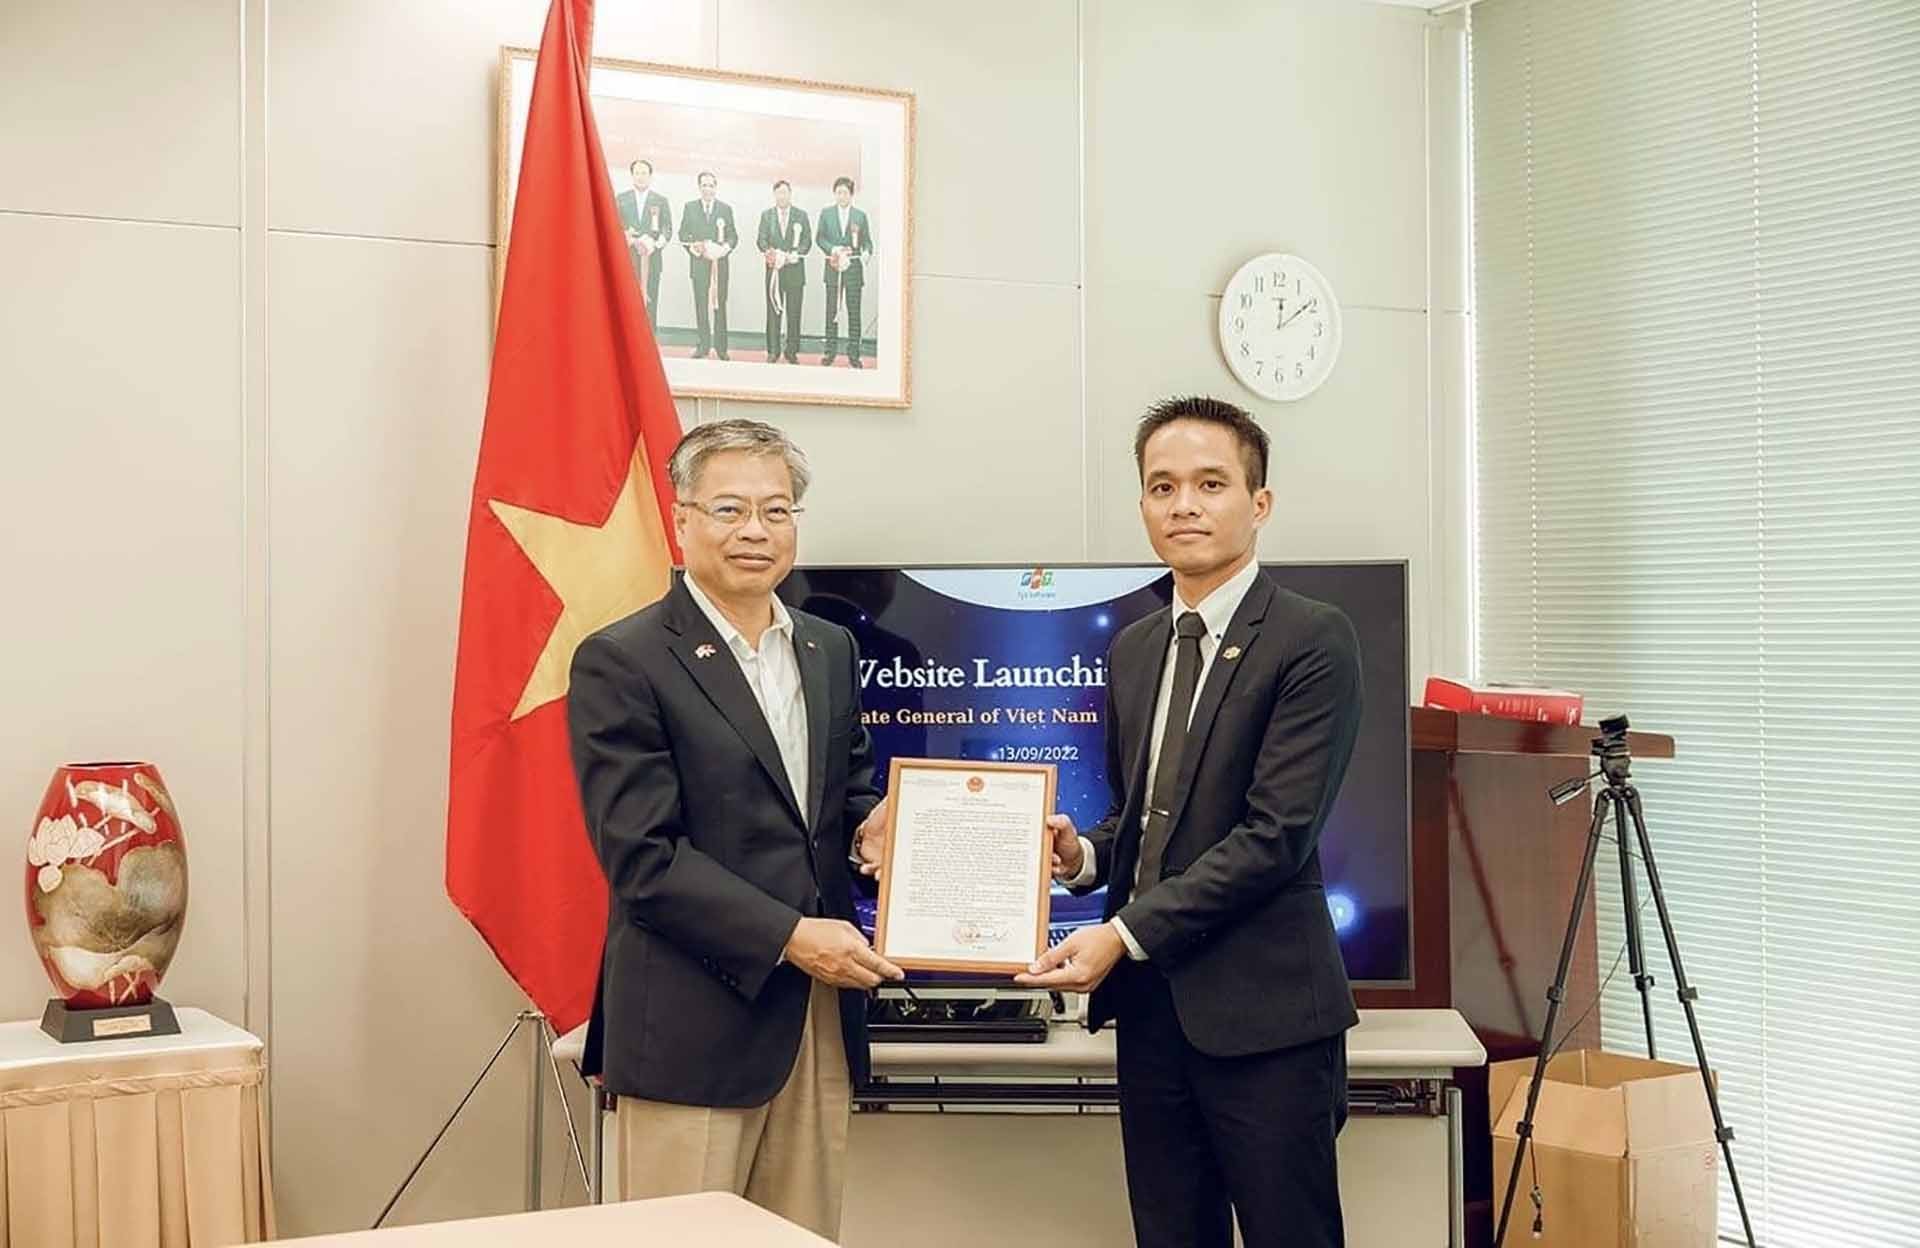 Tổng lãnh sự quán Việt Nam tại Fukuoka chính thức khai trương thêm một website mới